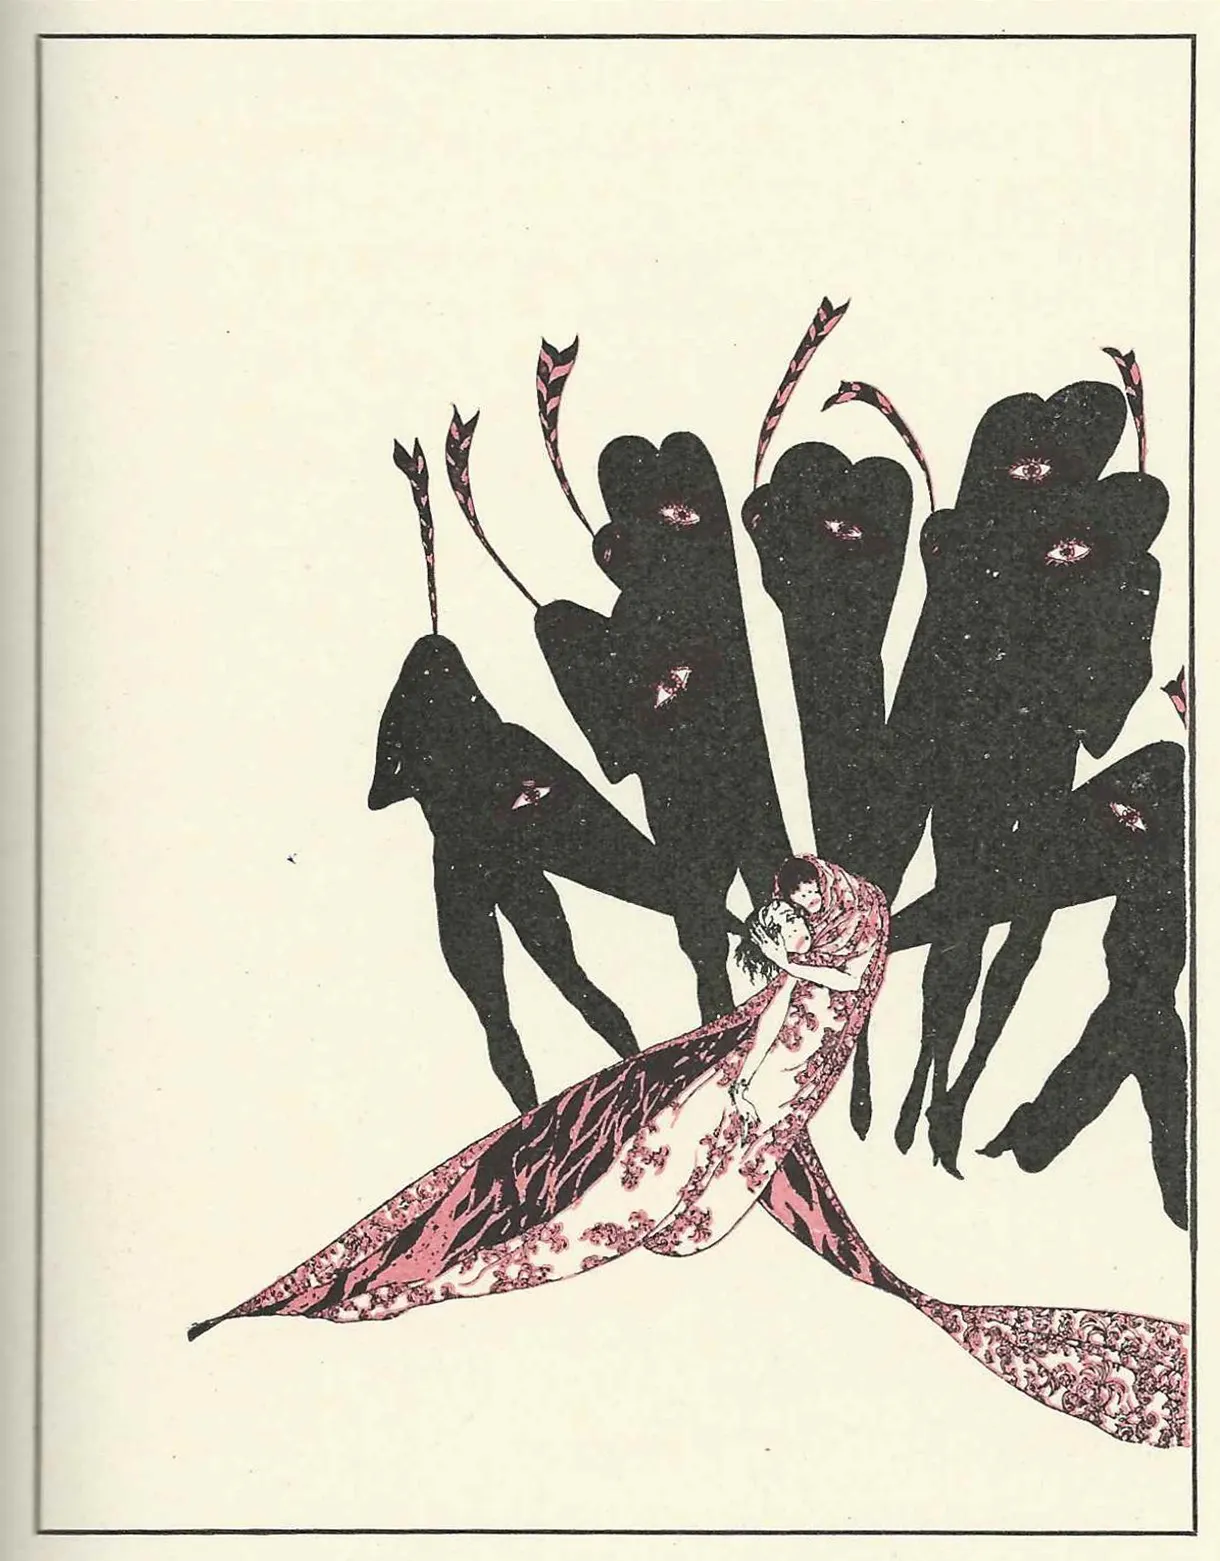 Illustration zu Oscar Wildes "Salomé" mit schattenhaften Gestalten